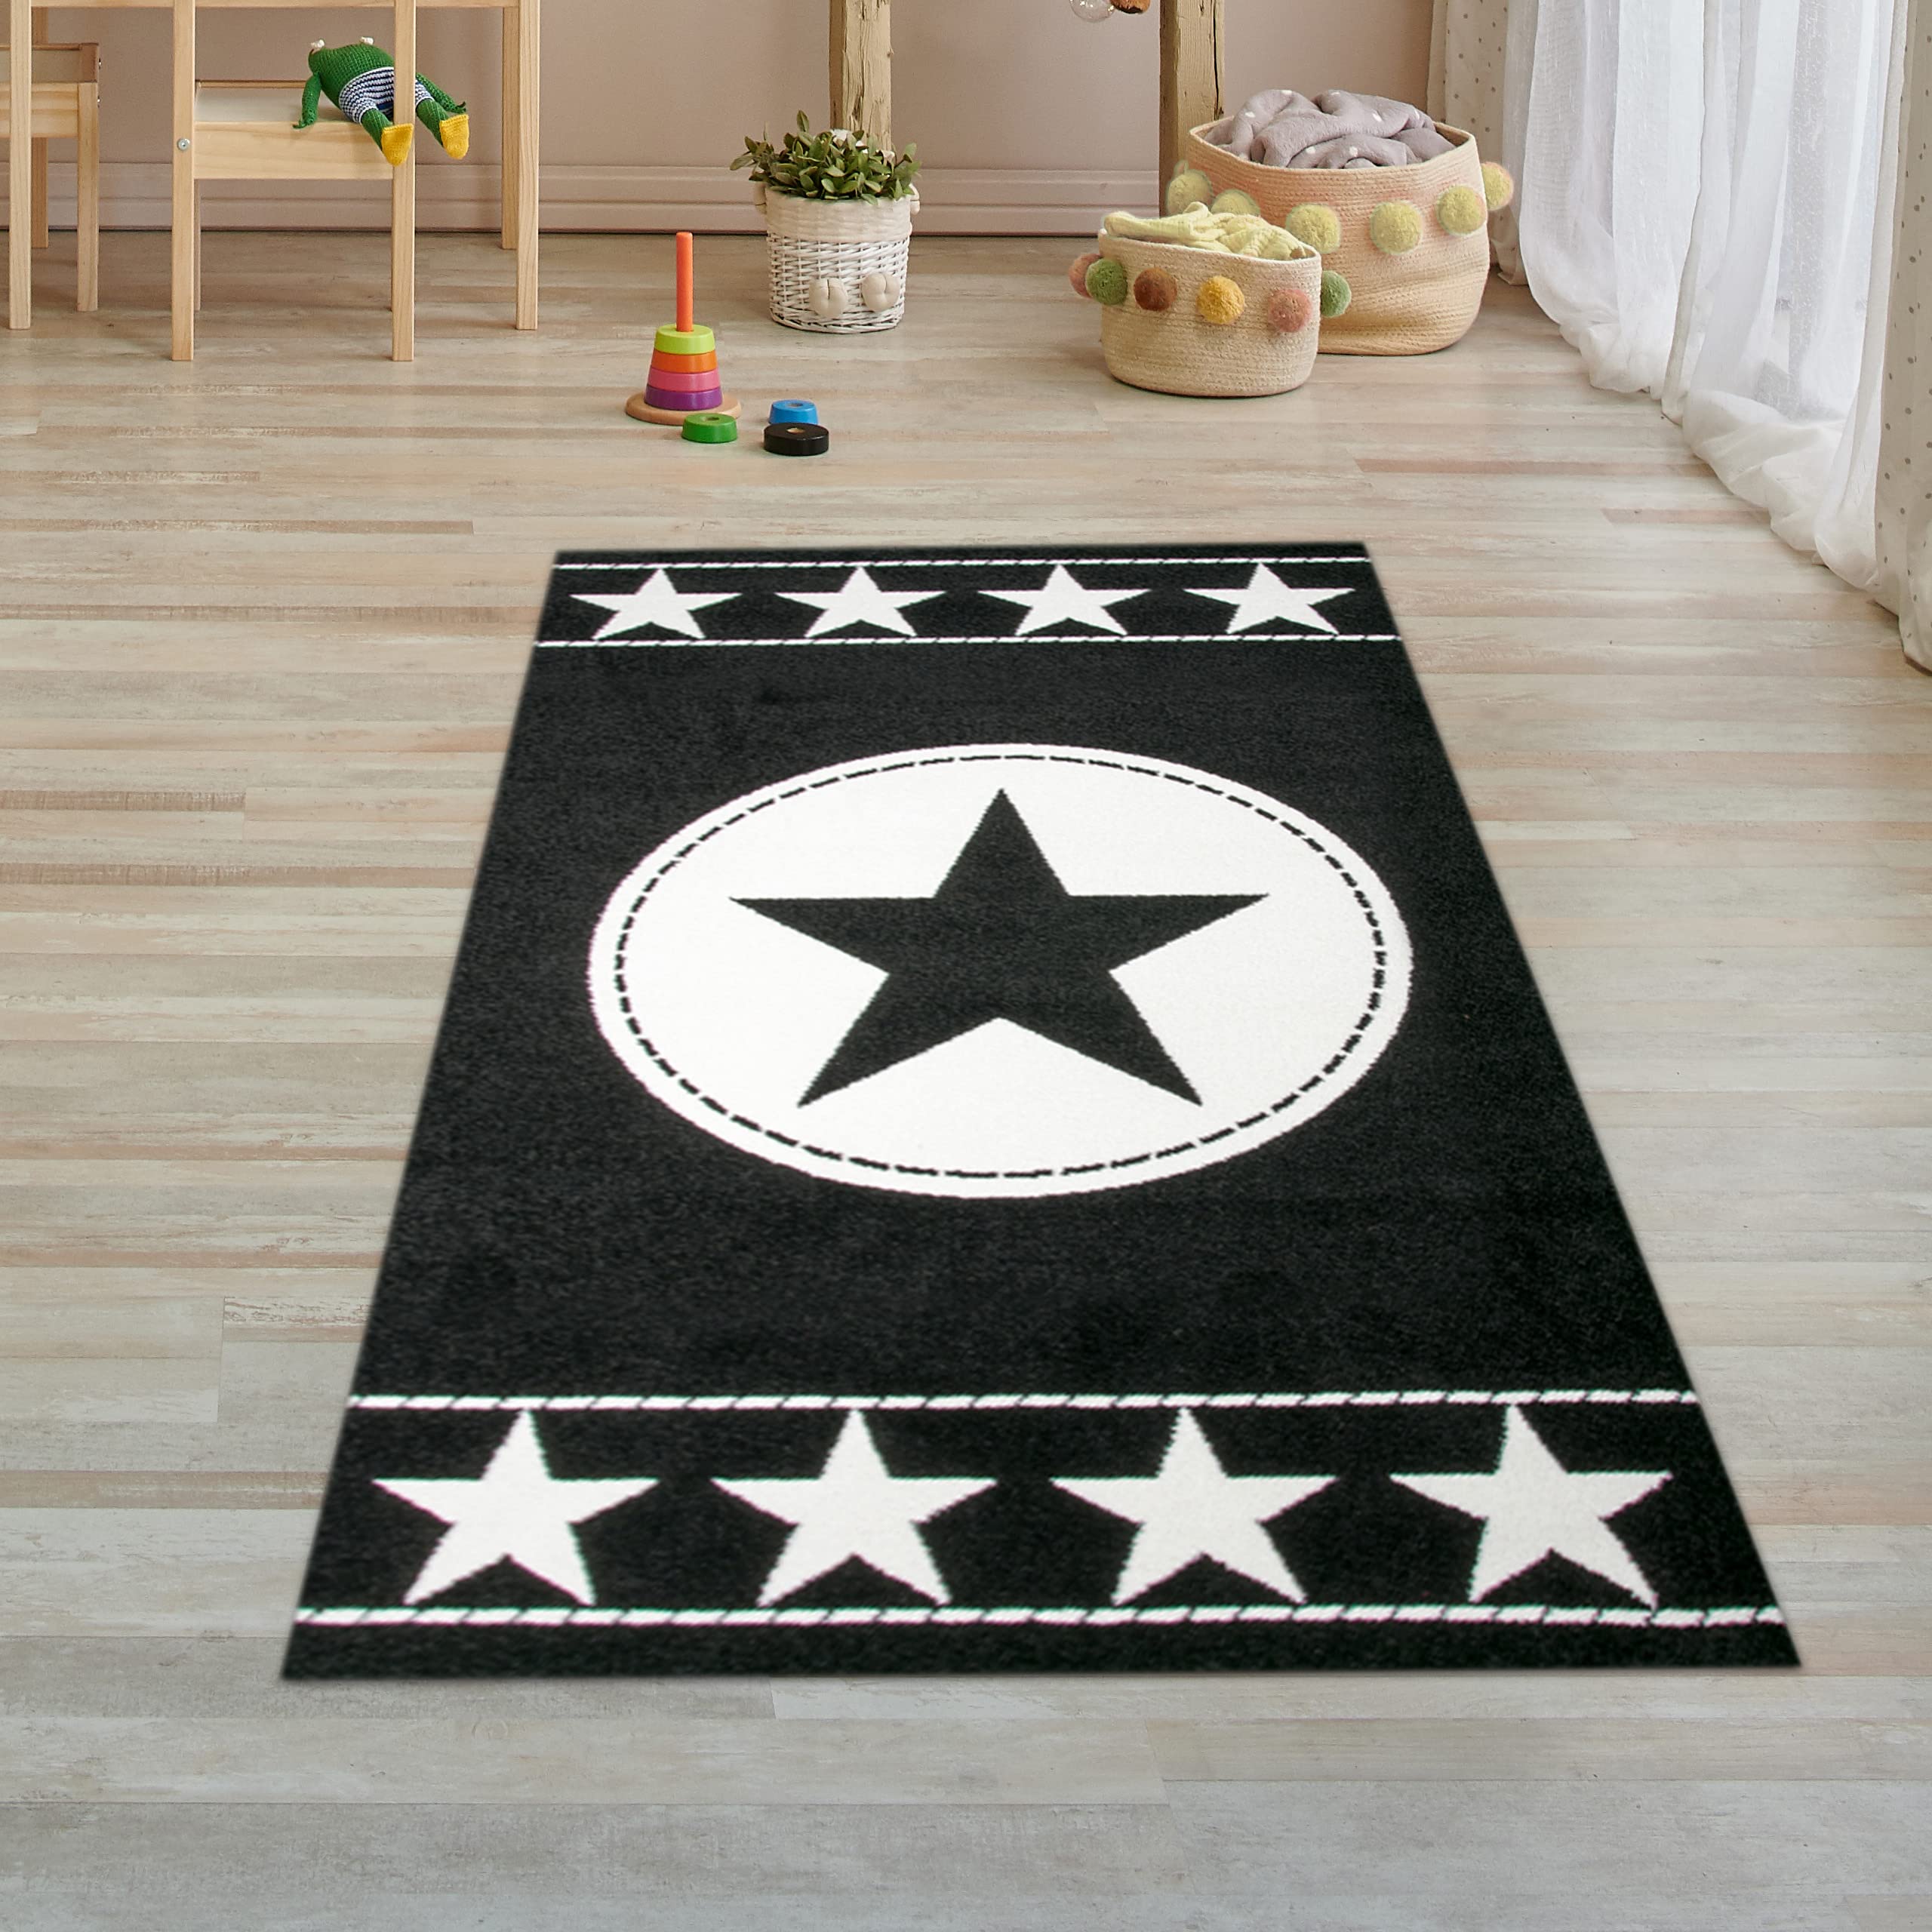 Traum Kinderteppich Spielteppich Kinderzimmer Teppich Sternteppich Sterne Schwarz Creme 80x150 cm